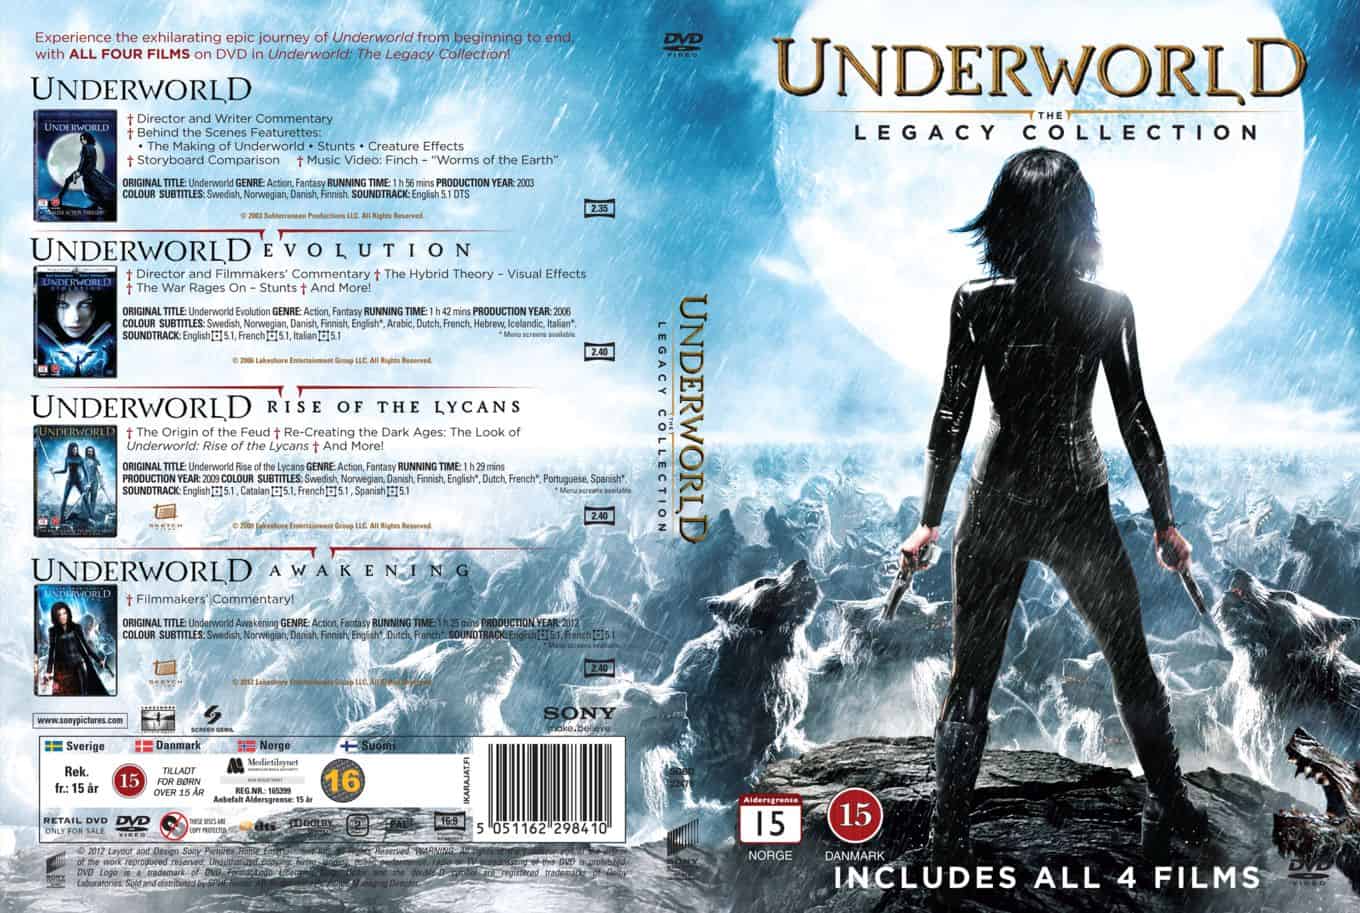 Underworld 5 Is Underworld Blood Wars Its Trailer Sizzle Reel Has Been Released Teasing January 17 Film Release Inside Pulse